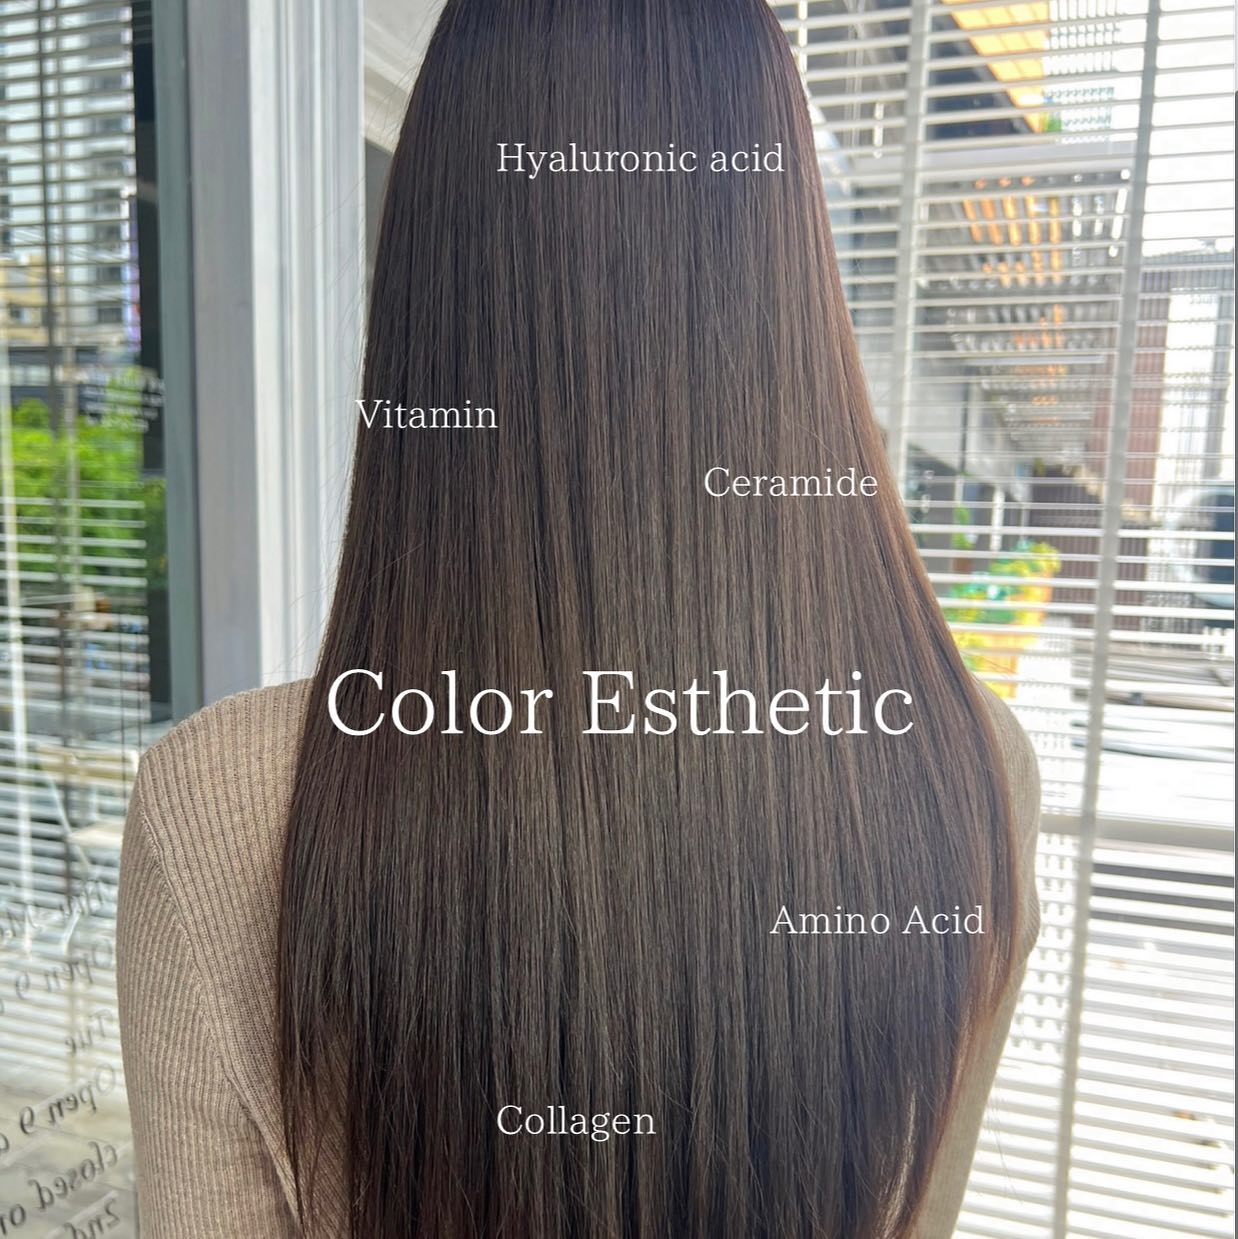 Color Esthetic  สี:Lavender Ash  ถึงแม้จะเป็นรายการเกี่ยวกับการทำสีผม แต่ก็สามารถทำให้เส้นผมมีสุขภาพที่ดีขึ้นได้🤫  เมนูCuu's hair เป็นเมนูยอดนิยม จำเป็นต้องจำกัดสิทธิ์ในการจองคิว แนะนำให้ทุกท่านรีบติดต่อทางเราเพื่อสำรองคิวไว้ล่วงหน้า
สำหรับเมนูนี้เป็นการทำสีพร้อมกับการดูแลเส้นผมด้วยการเติมสารอาหารจำนวนมาก เช่น เคราติน คอลลาเจน กรดอะมิโน กรดไฮยาลูโรนิก เซราไมด์ ฯลฯ 
ไม่ว่าจะเป็นพื้นผมธรรมดา หรือพื้นผมที่ผ่านการฟอก ผมจะดูเงางามขึ้น เนื่องจากเส้นผมได้รับการบำรุงดูแลจากภายใน ไม่ว่าจะมีสภาพเส้นผมอย่างไรผมจะดีขึ้นได้อย่างแน่นอน  แนะนำ!! เหมาะสำหรับผู้ที่ต้องการทำสีผมแต่ไม่ต้องการให้เส้นผมหรือหนังศรีษะถูกทำลายหรือได้รับความเสียหาย   อยากให้ทุกท่านได้สัมผัสกับเมนูทำผมอย่างเต็มรูปแบบที่สัมผัสได้ที่ CUU’s hair ที่เดียวเท่านั้น ‍♀️  Color Esthetic
7300 บาท → 4600 บาท
ตัด ,ทำสี ,ให้คำปรึกษา, ดีท็อกซ์หนังศีรษะ,สระผม, แชมพู ,ทรีทเม้นท์, เซ็ท, เป่า,การรับประกัน (ฟรี) ปรึกษาทางไลน์ (ฟรี) + ตัดหน้าม้าหลังทำ 3 สัปดาห์  ระยะเวลาที่ใช้ : ประมาณ 3 ชั่วโมง  カラーエステは…  ヘアカラーメニューなのに髪の毛が良くなります🤫  クーズヘアの人気メニュー、予約に制限を設けているのでご予約はお早めに！
ケラチン、コラーゲン、アミノ酸、スーパーヒアルロン酸、セラミドなどなどここでは伝えきれない程の栄養をたくさん入れながらカラーの施術しています。普通の髪はもちろん、ブリーチ毛でも、とても艶が出て、髪の内部から栄養補給されてどんな髪でも本来の状態が必ず良くなります！
カラーしたいけど、髪や頭皮を傷ませたくない方におすすめです！  クーズヘアのオリジナル、髪エステ是非体験してください‍♀️  カラーエステ
7300バーツ→4600バーツ
カラー、カウンセリング、頭皮デトックス、髪クレンジング、シャンプー、トリートメント、カット（カットなしは７００Bオフ）セット、ブロー、技術保証（無料）ライン相談（無料）  所要時間: 約3時間  IG:cuushair
Facebook : Cuu's​ hair
TEL : 02-065-0909
#bangkok #thonglor #bangkokhairsalon #ผม #เกาหลี #ม้วนผมเกาหลี #ร้านเสริมสวย #ดัดผม #สไตล์เกาหลี #hairesthetic #organic